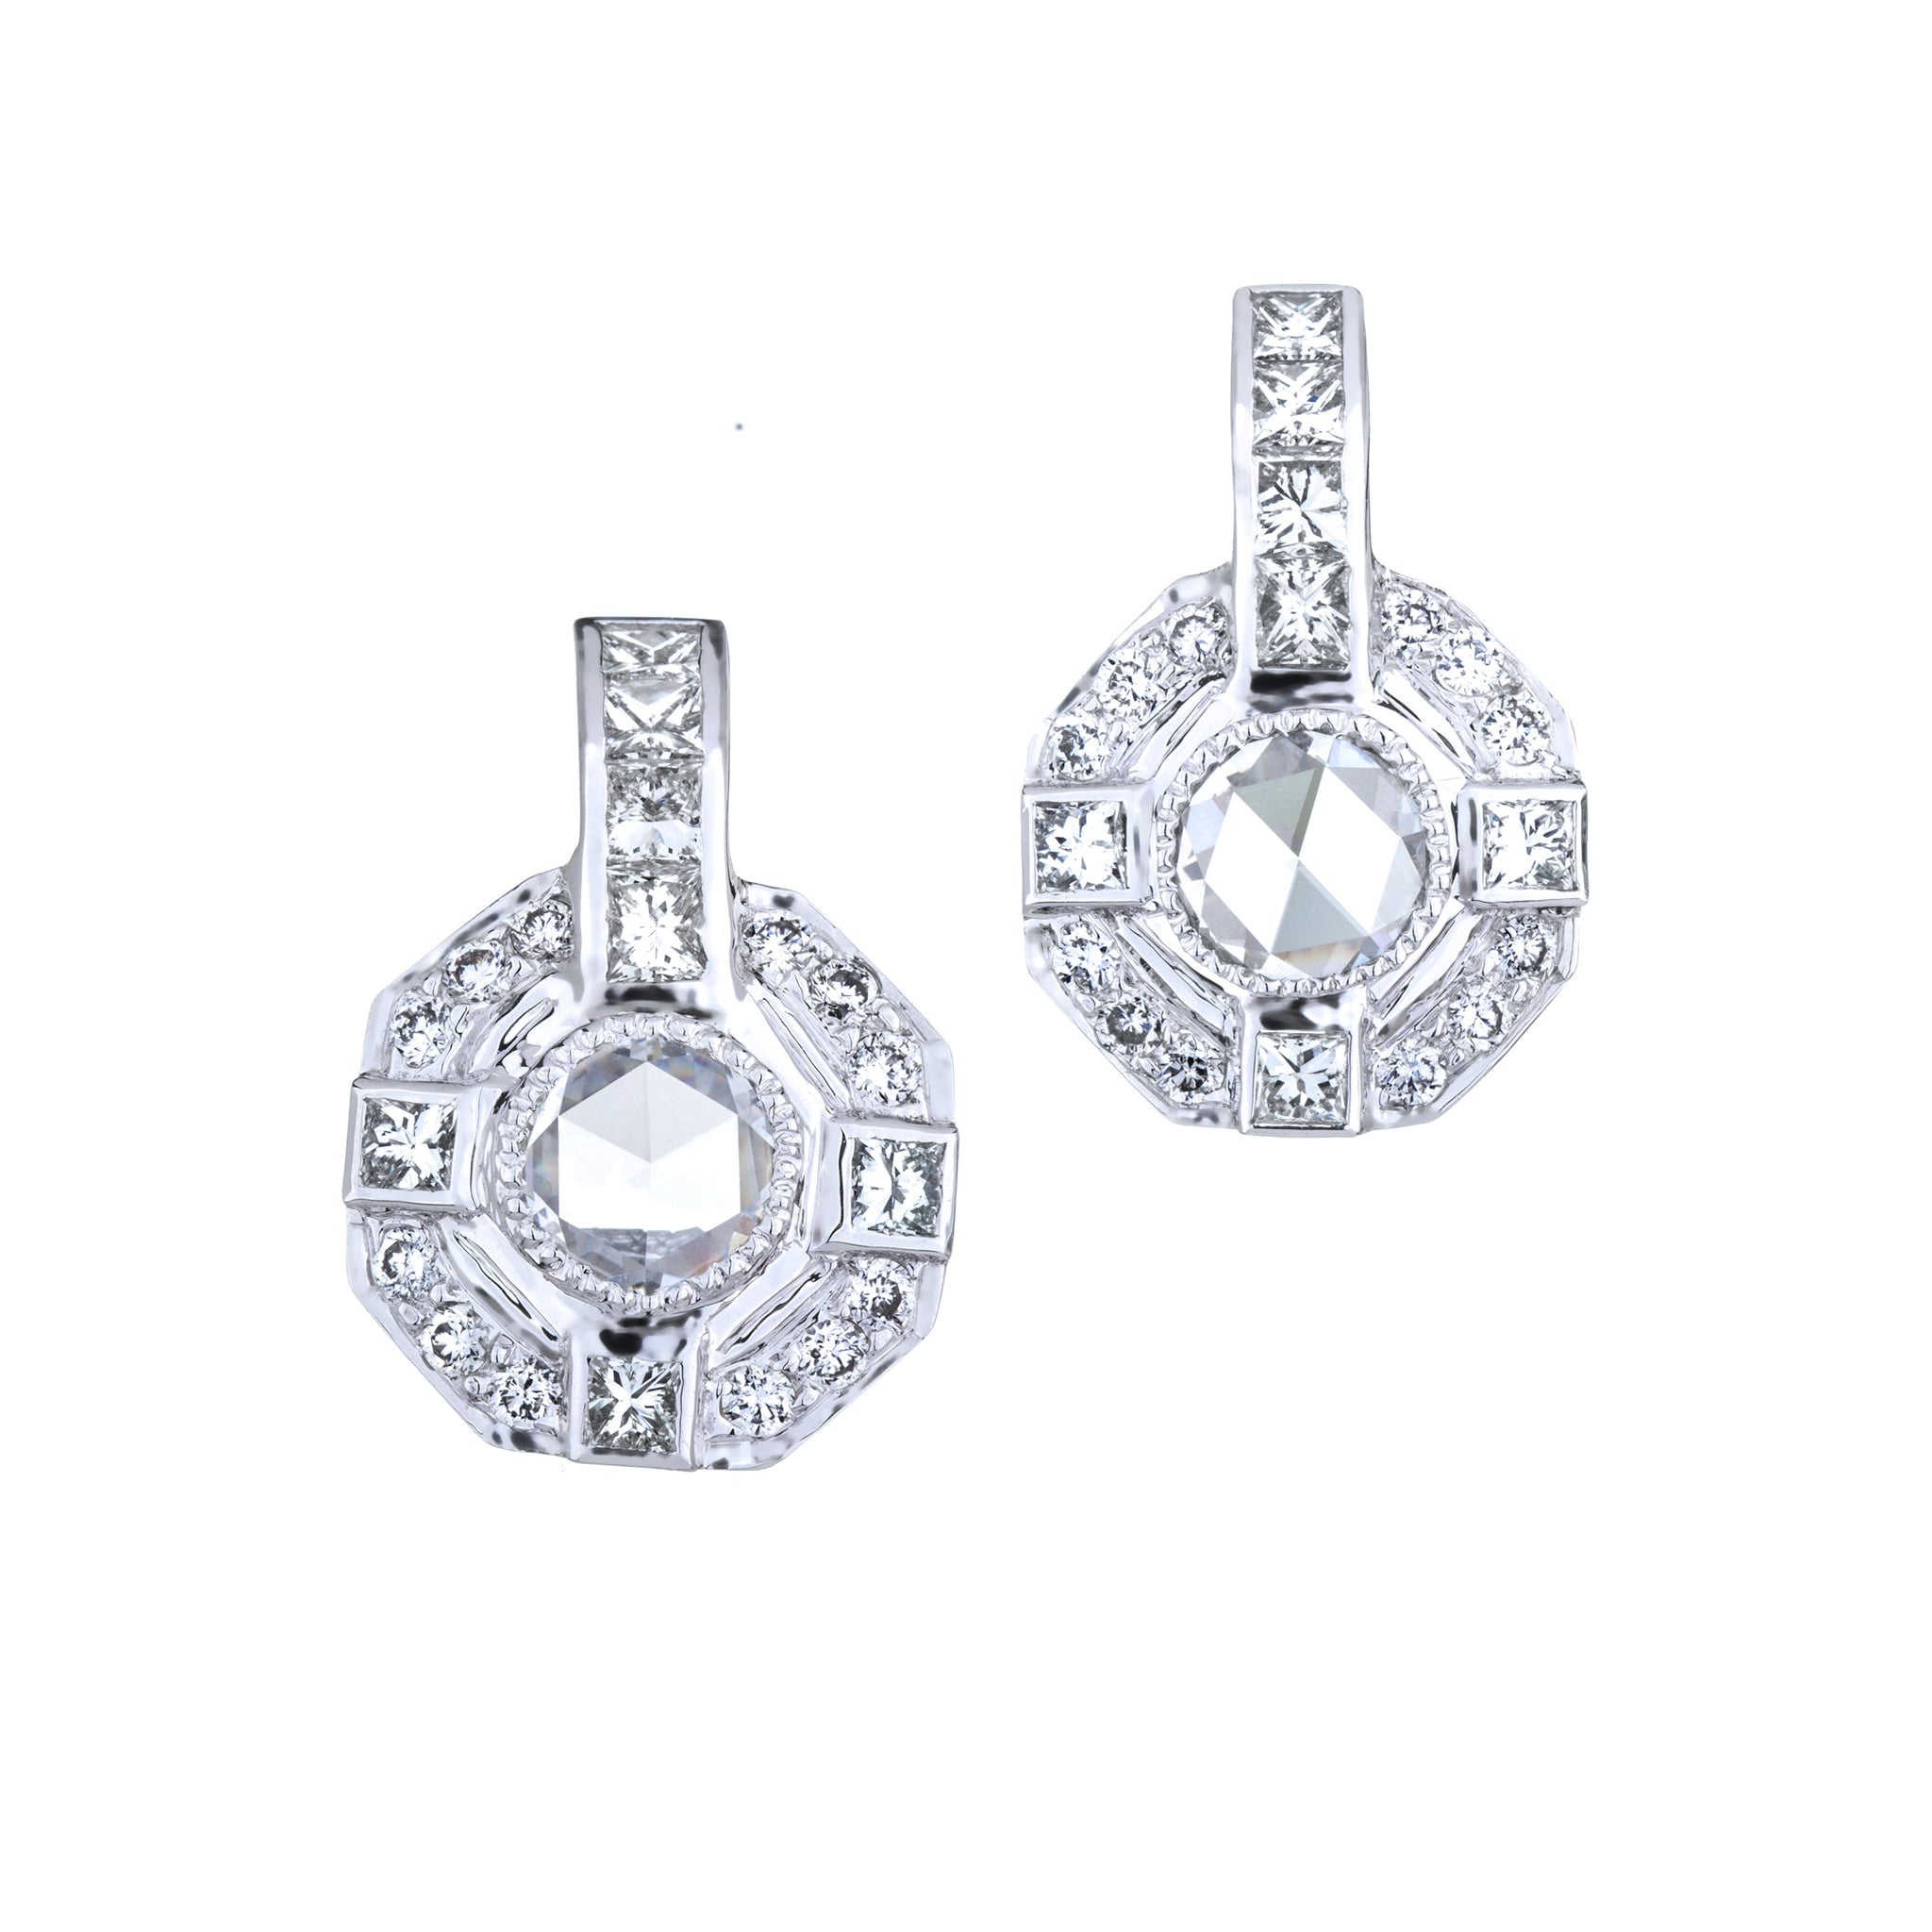 Moderne Rose Cut and Princess Cut Diamond Drop Earrings